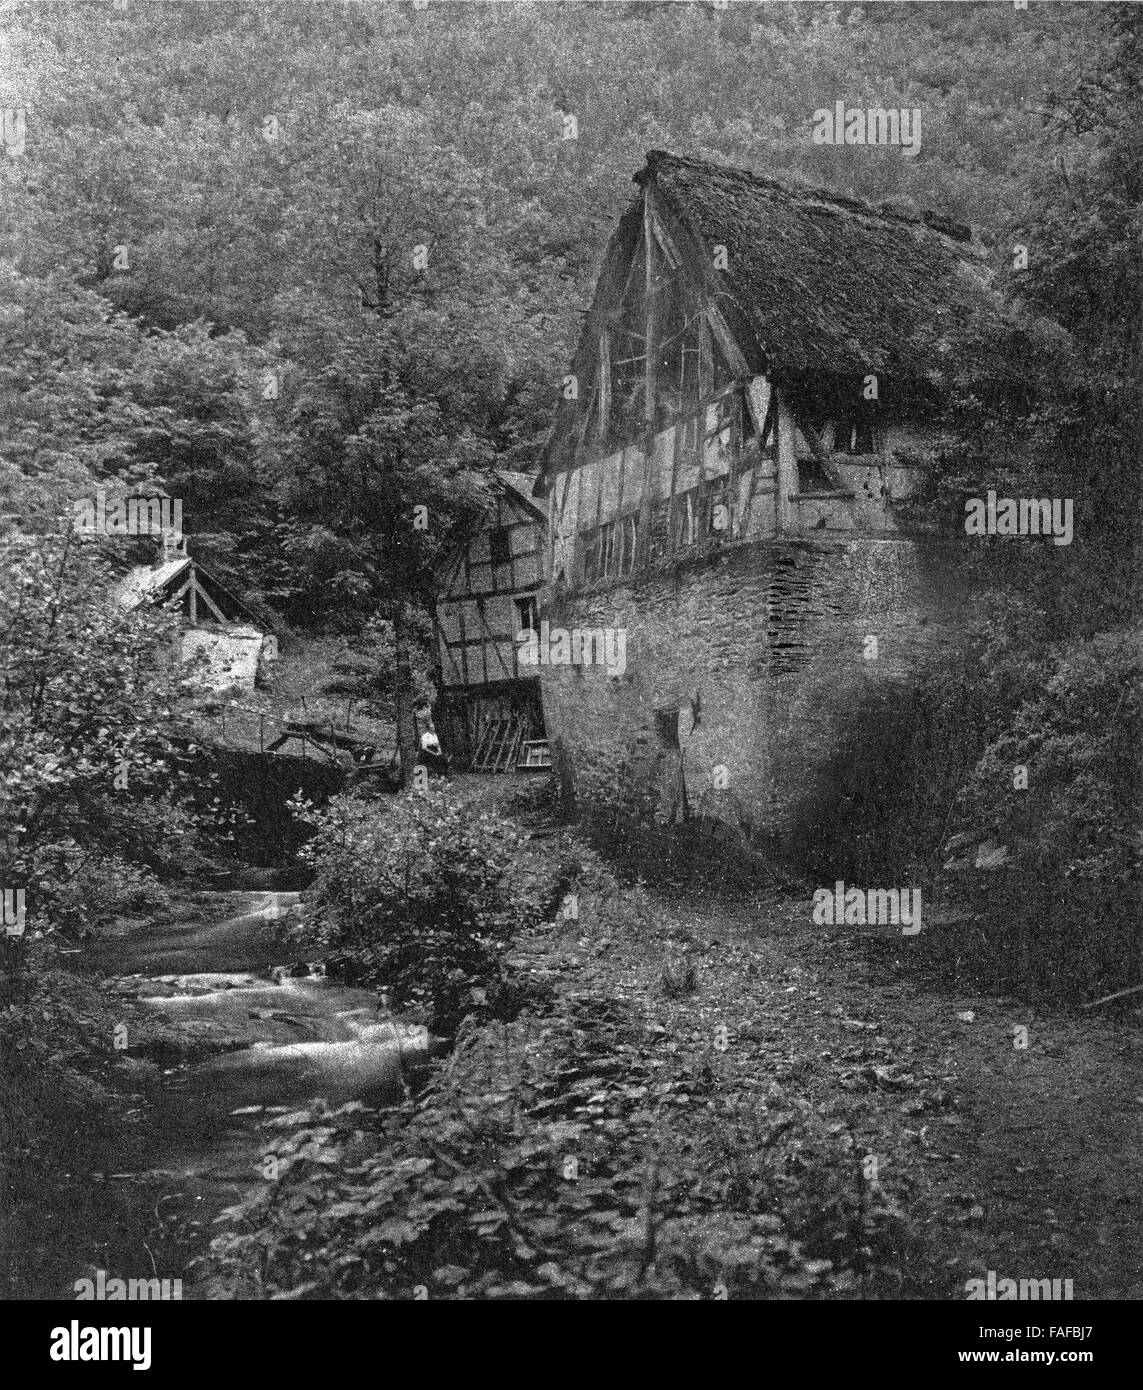 Idyllische Fachwerkmühle an einem kleinen Flußlauf, Deutschland 1920er Jahre. Timbered house with a mill at a small river, Germany 1930s. Stock Photo